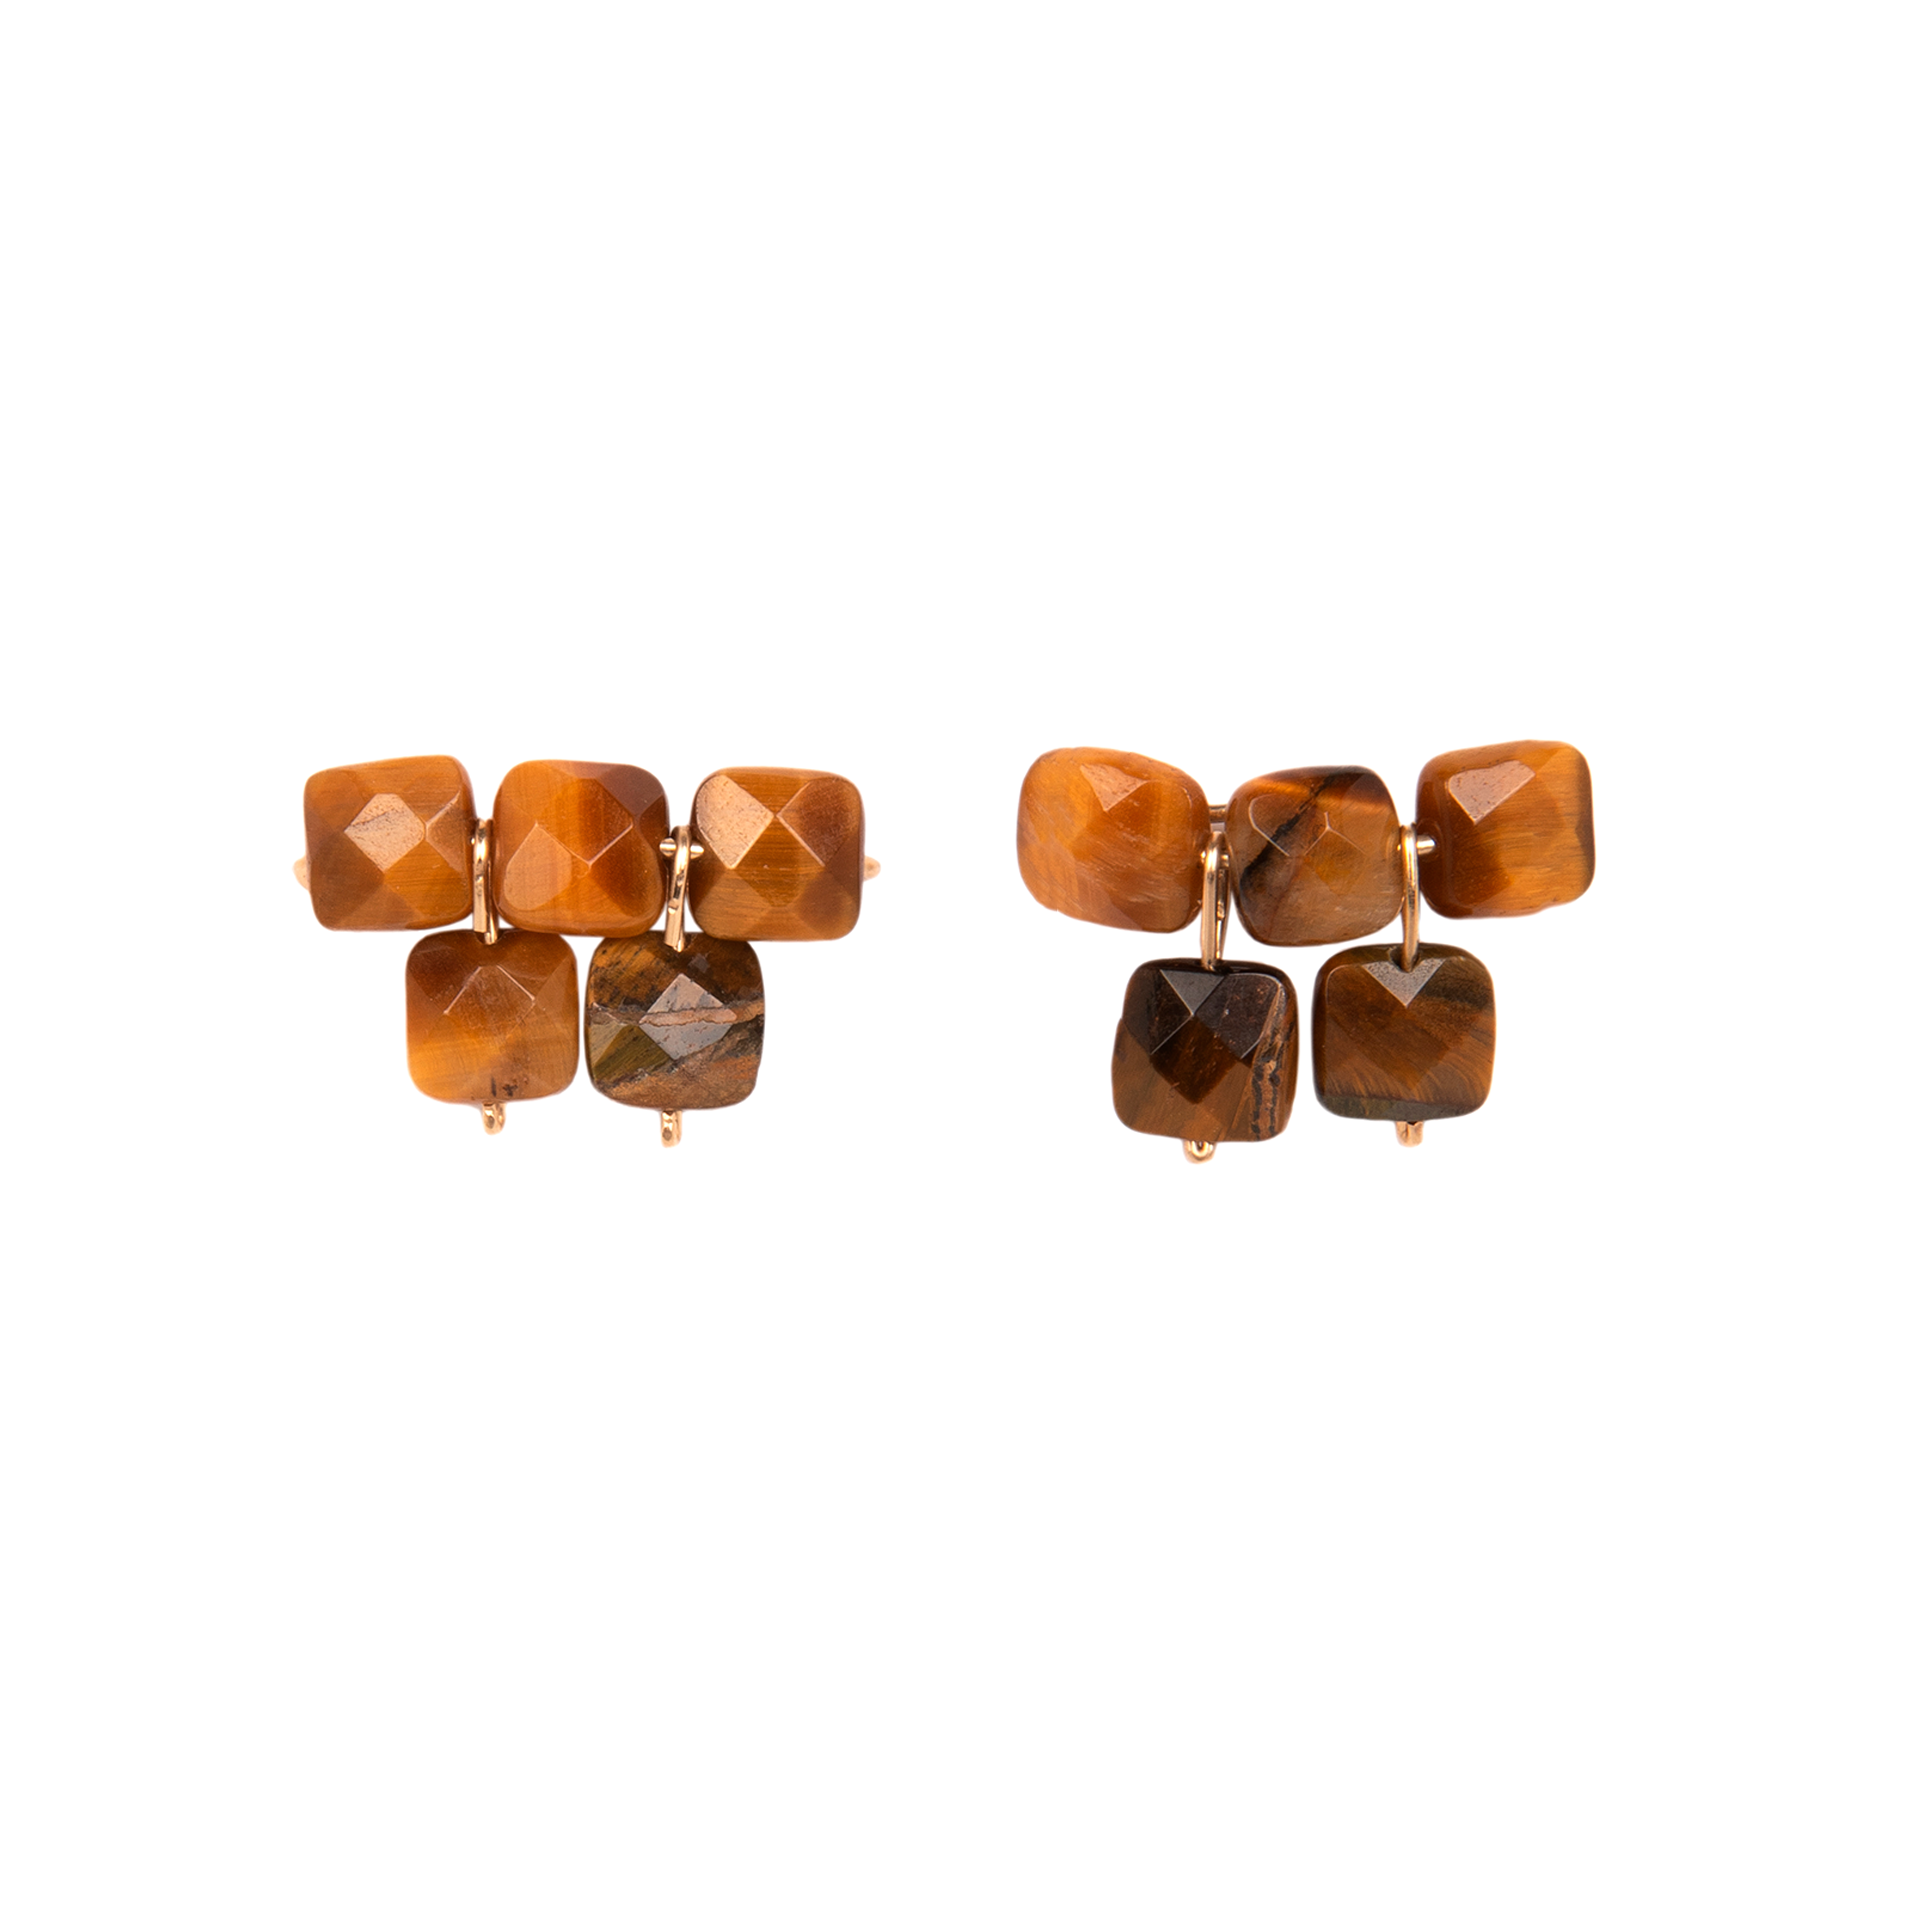 Sedum Earrings #1 (20mm) - Ojo de Tigre Earrings TARBAY   